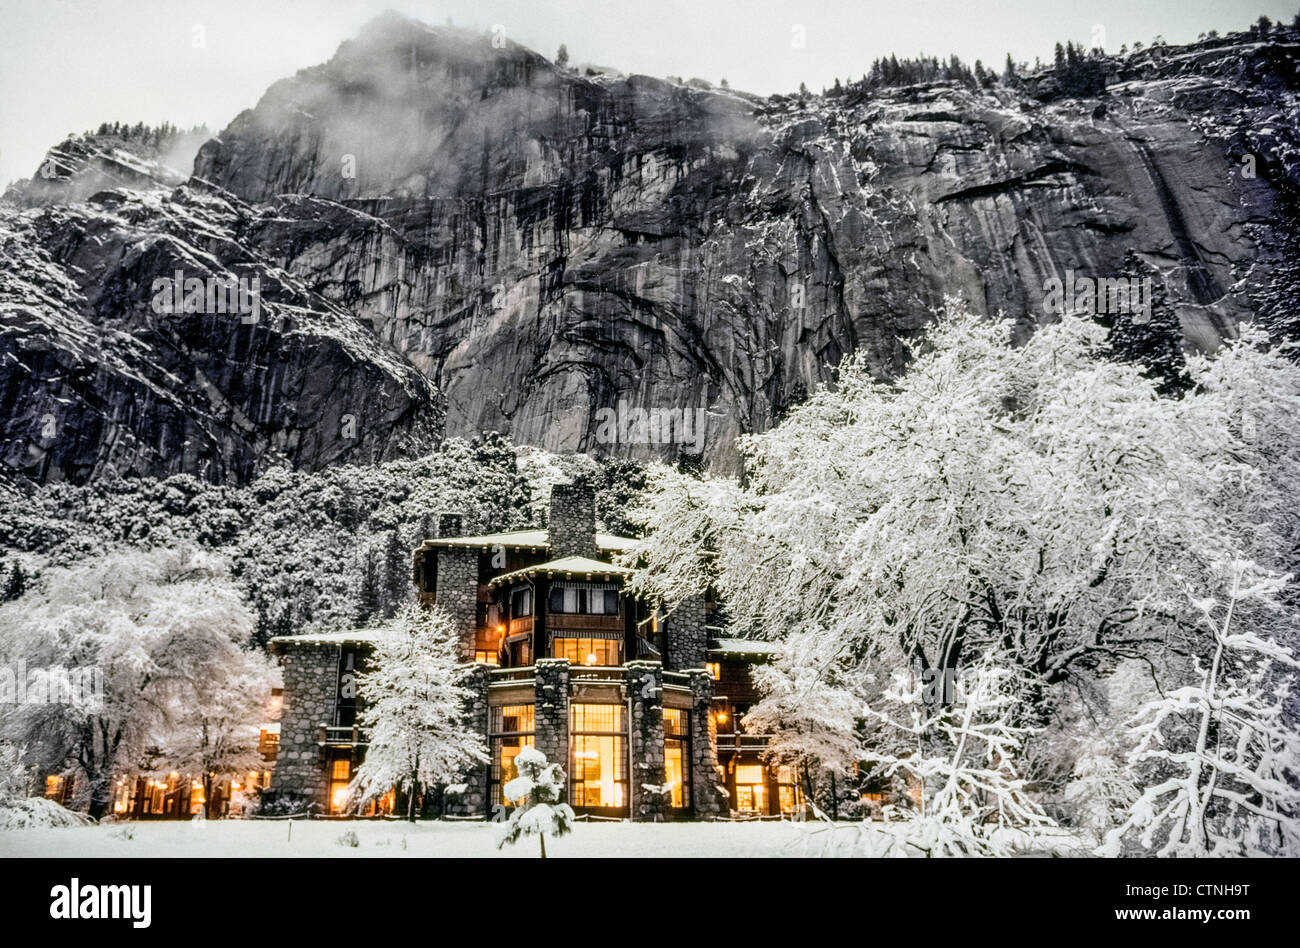 La lueur des lumières électriques à l'intérieur de l'historique 1927 Ahwahnee Hotel réchauffe une scène hivernale enneigée dans le parc national montagneux de Yosemite en Californie, aux États-Unis. Banque D'Images